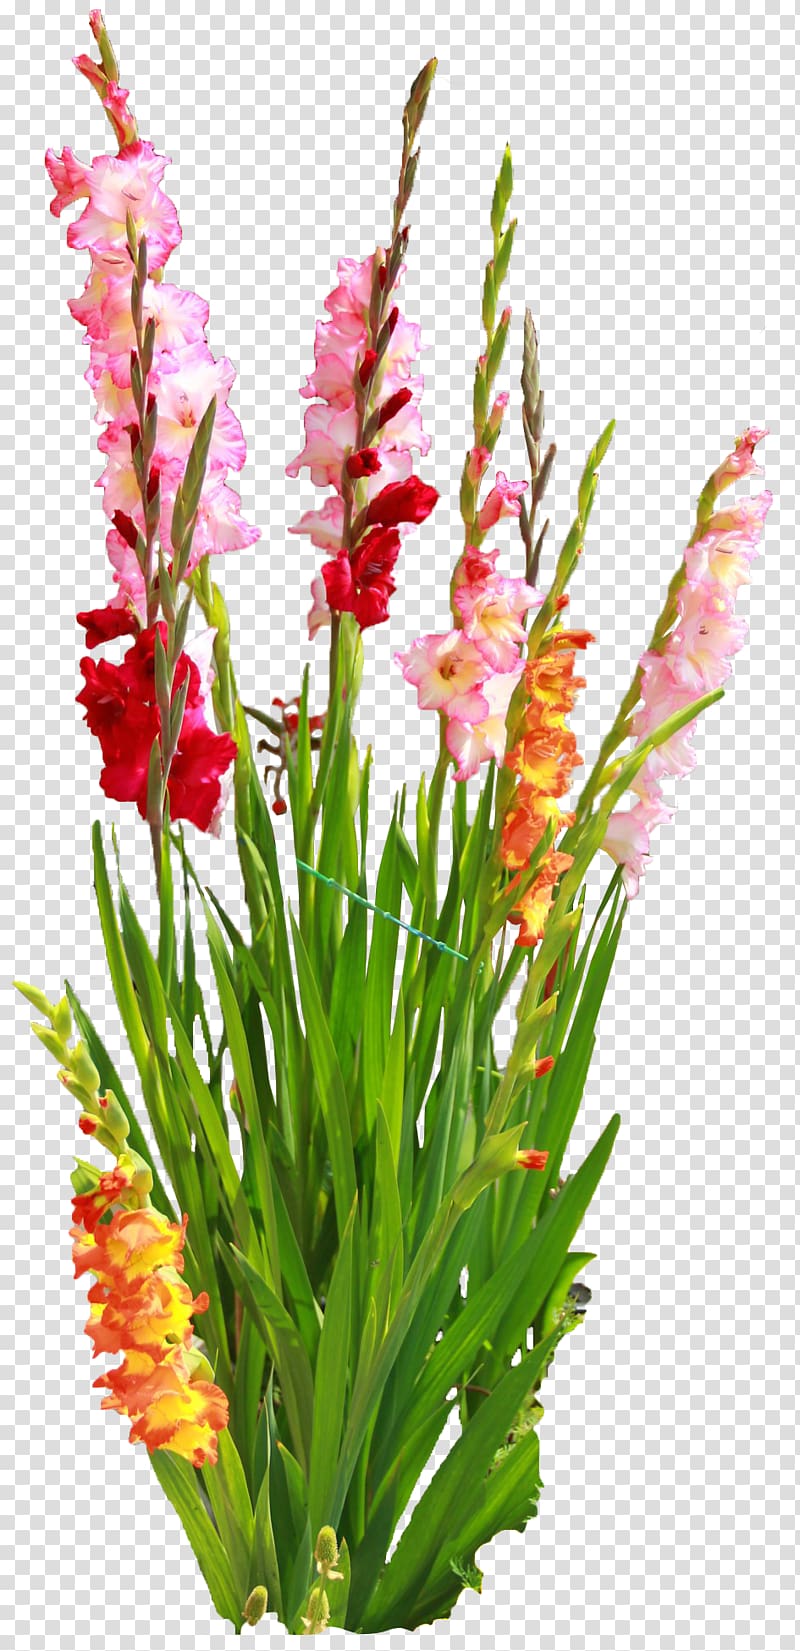 Gladiolus Cut flowers Bulb Floral design, gladiolus transparent background PNG clipart